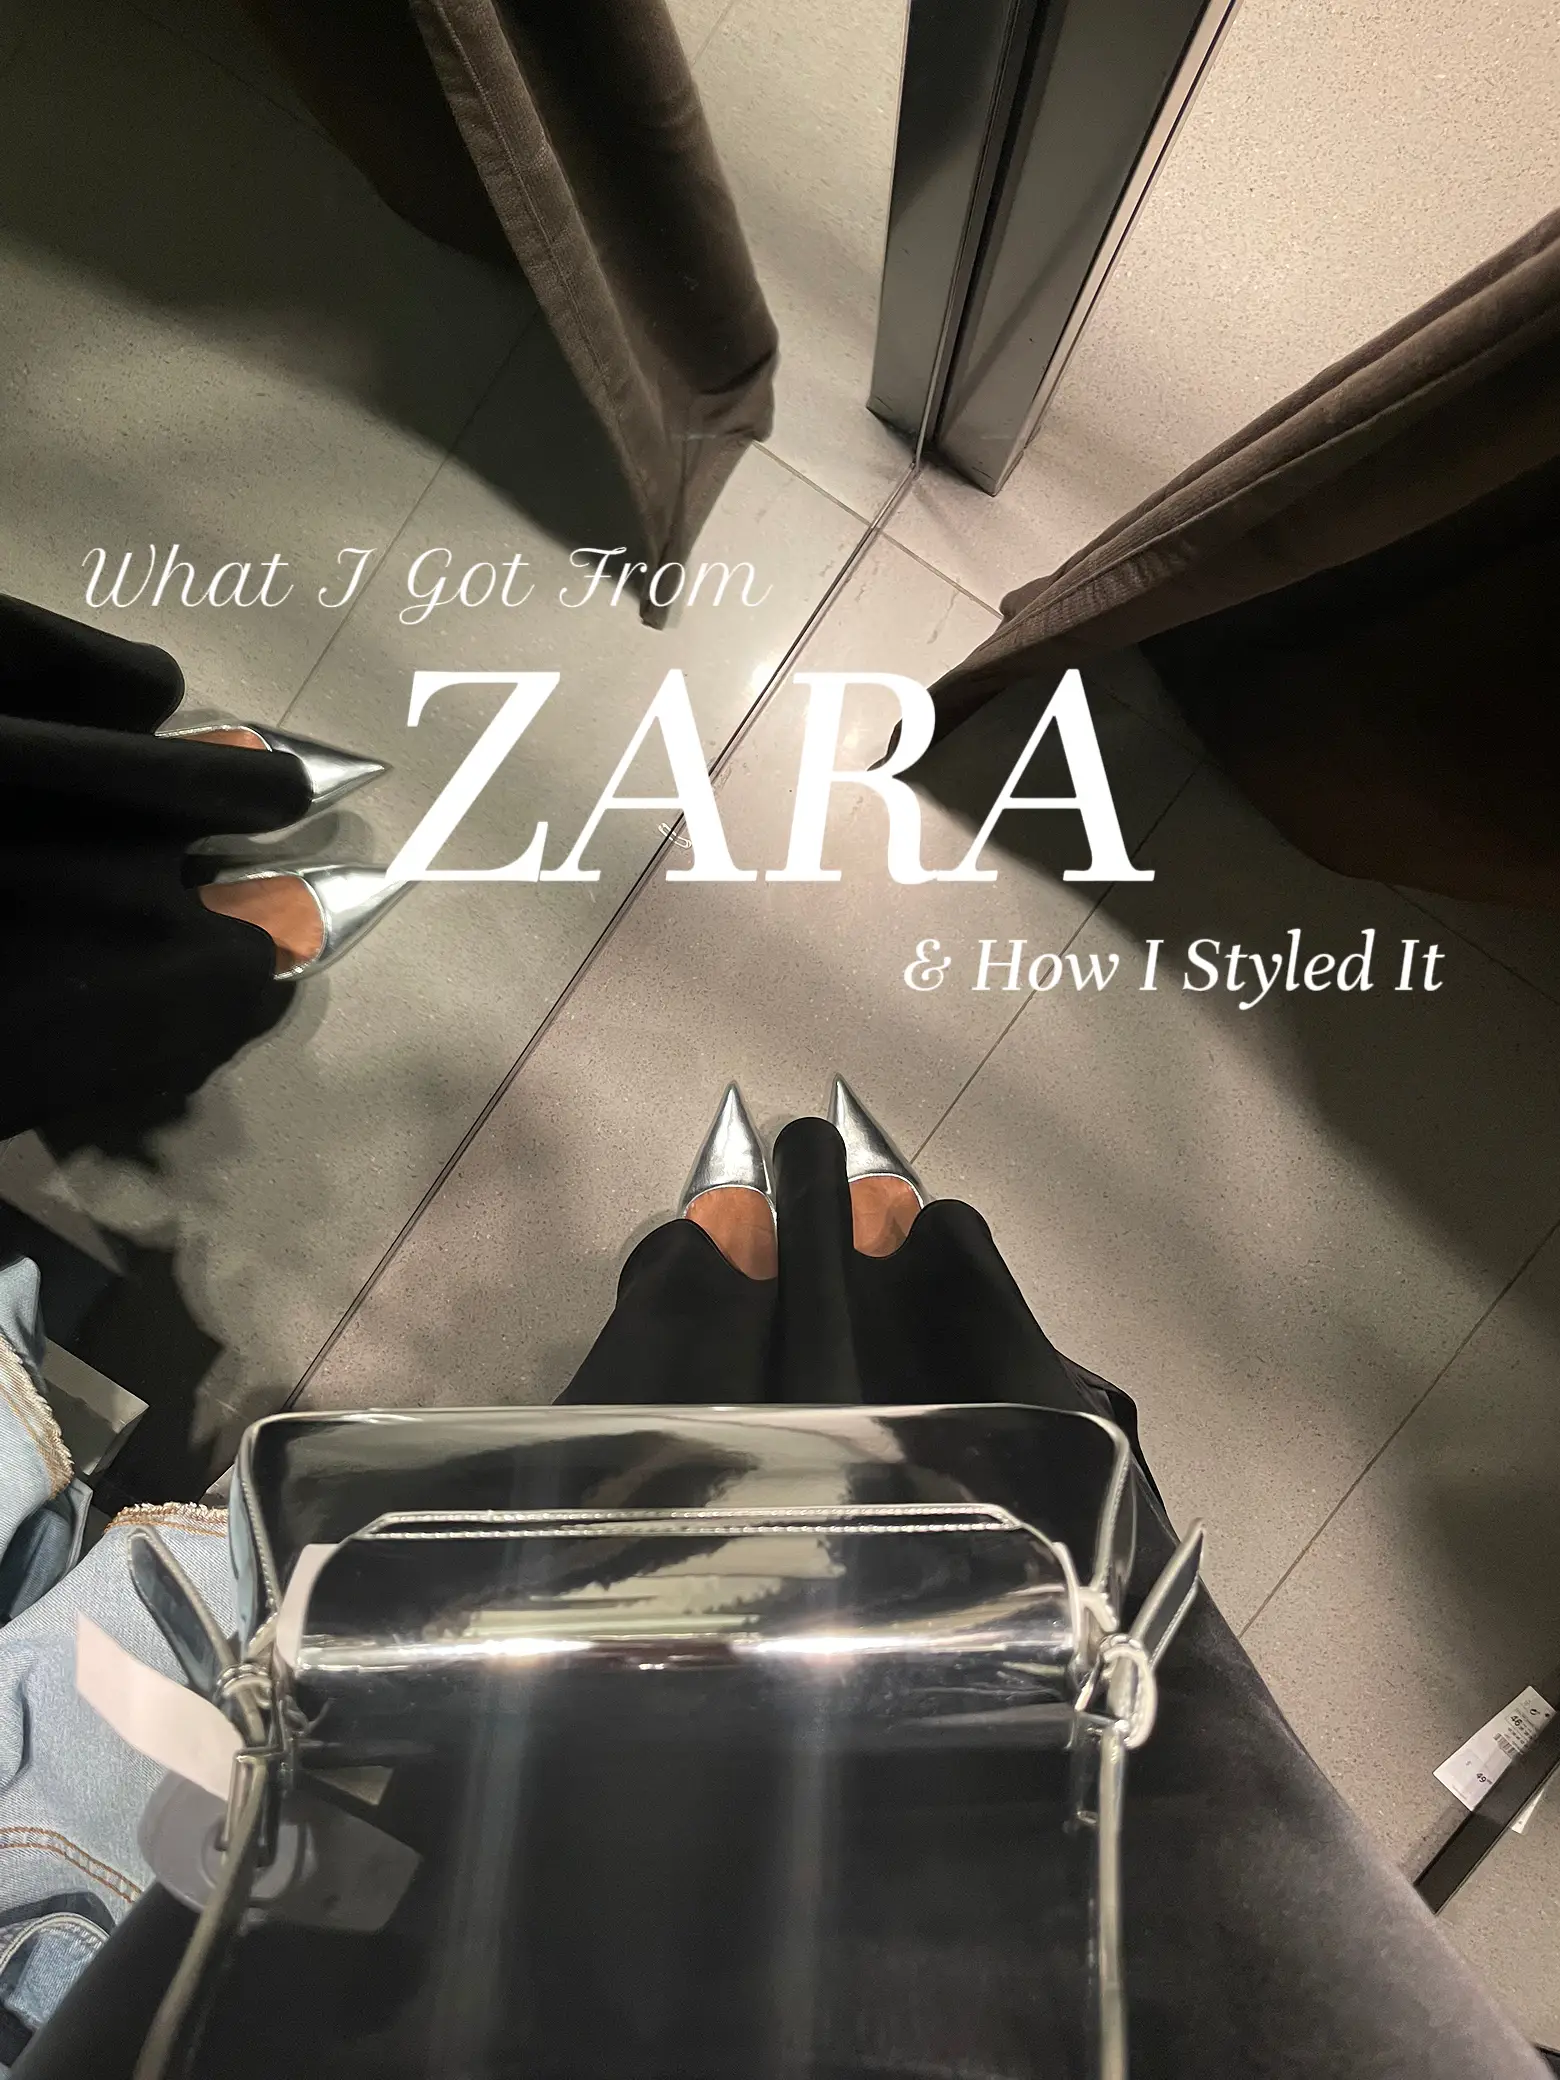 zara sale is happening now!